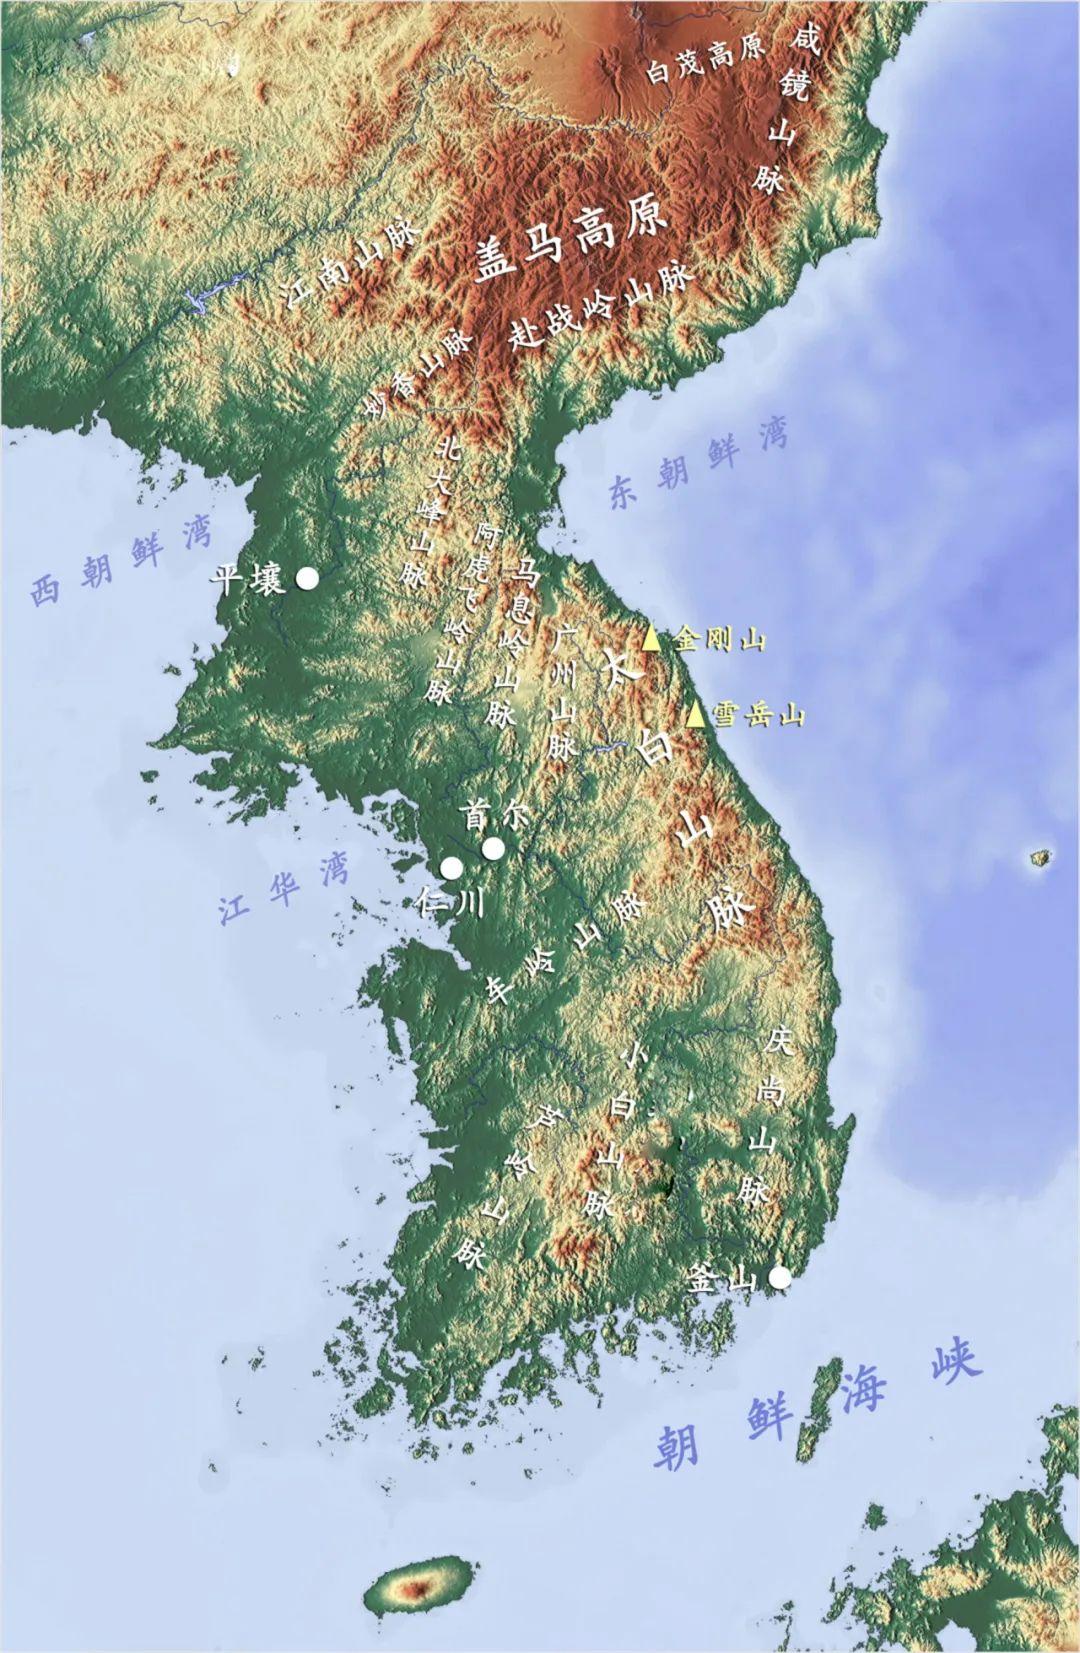 地图看世界;易守难攻的多山之国朝鲜